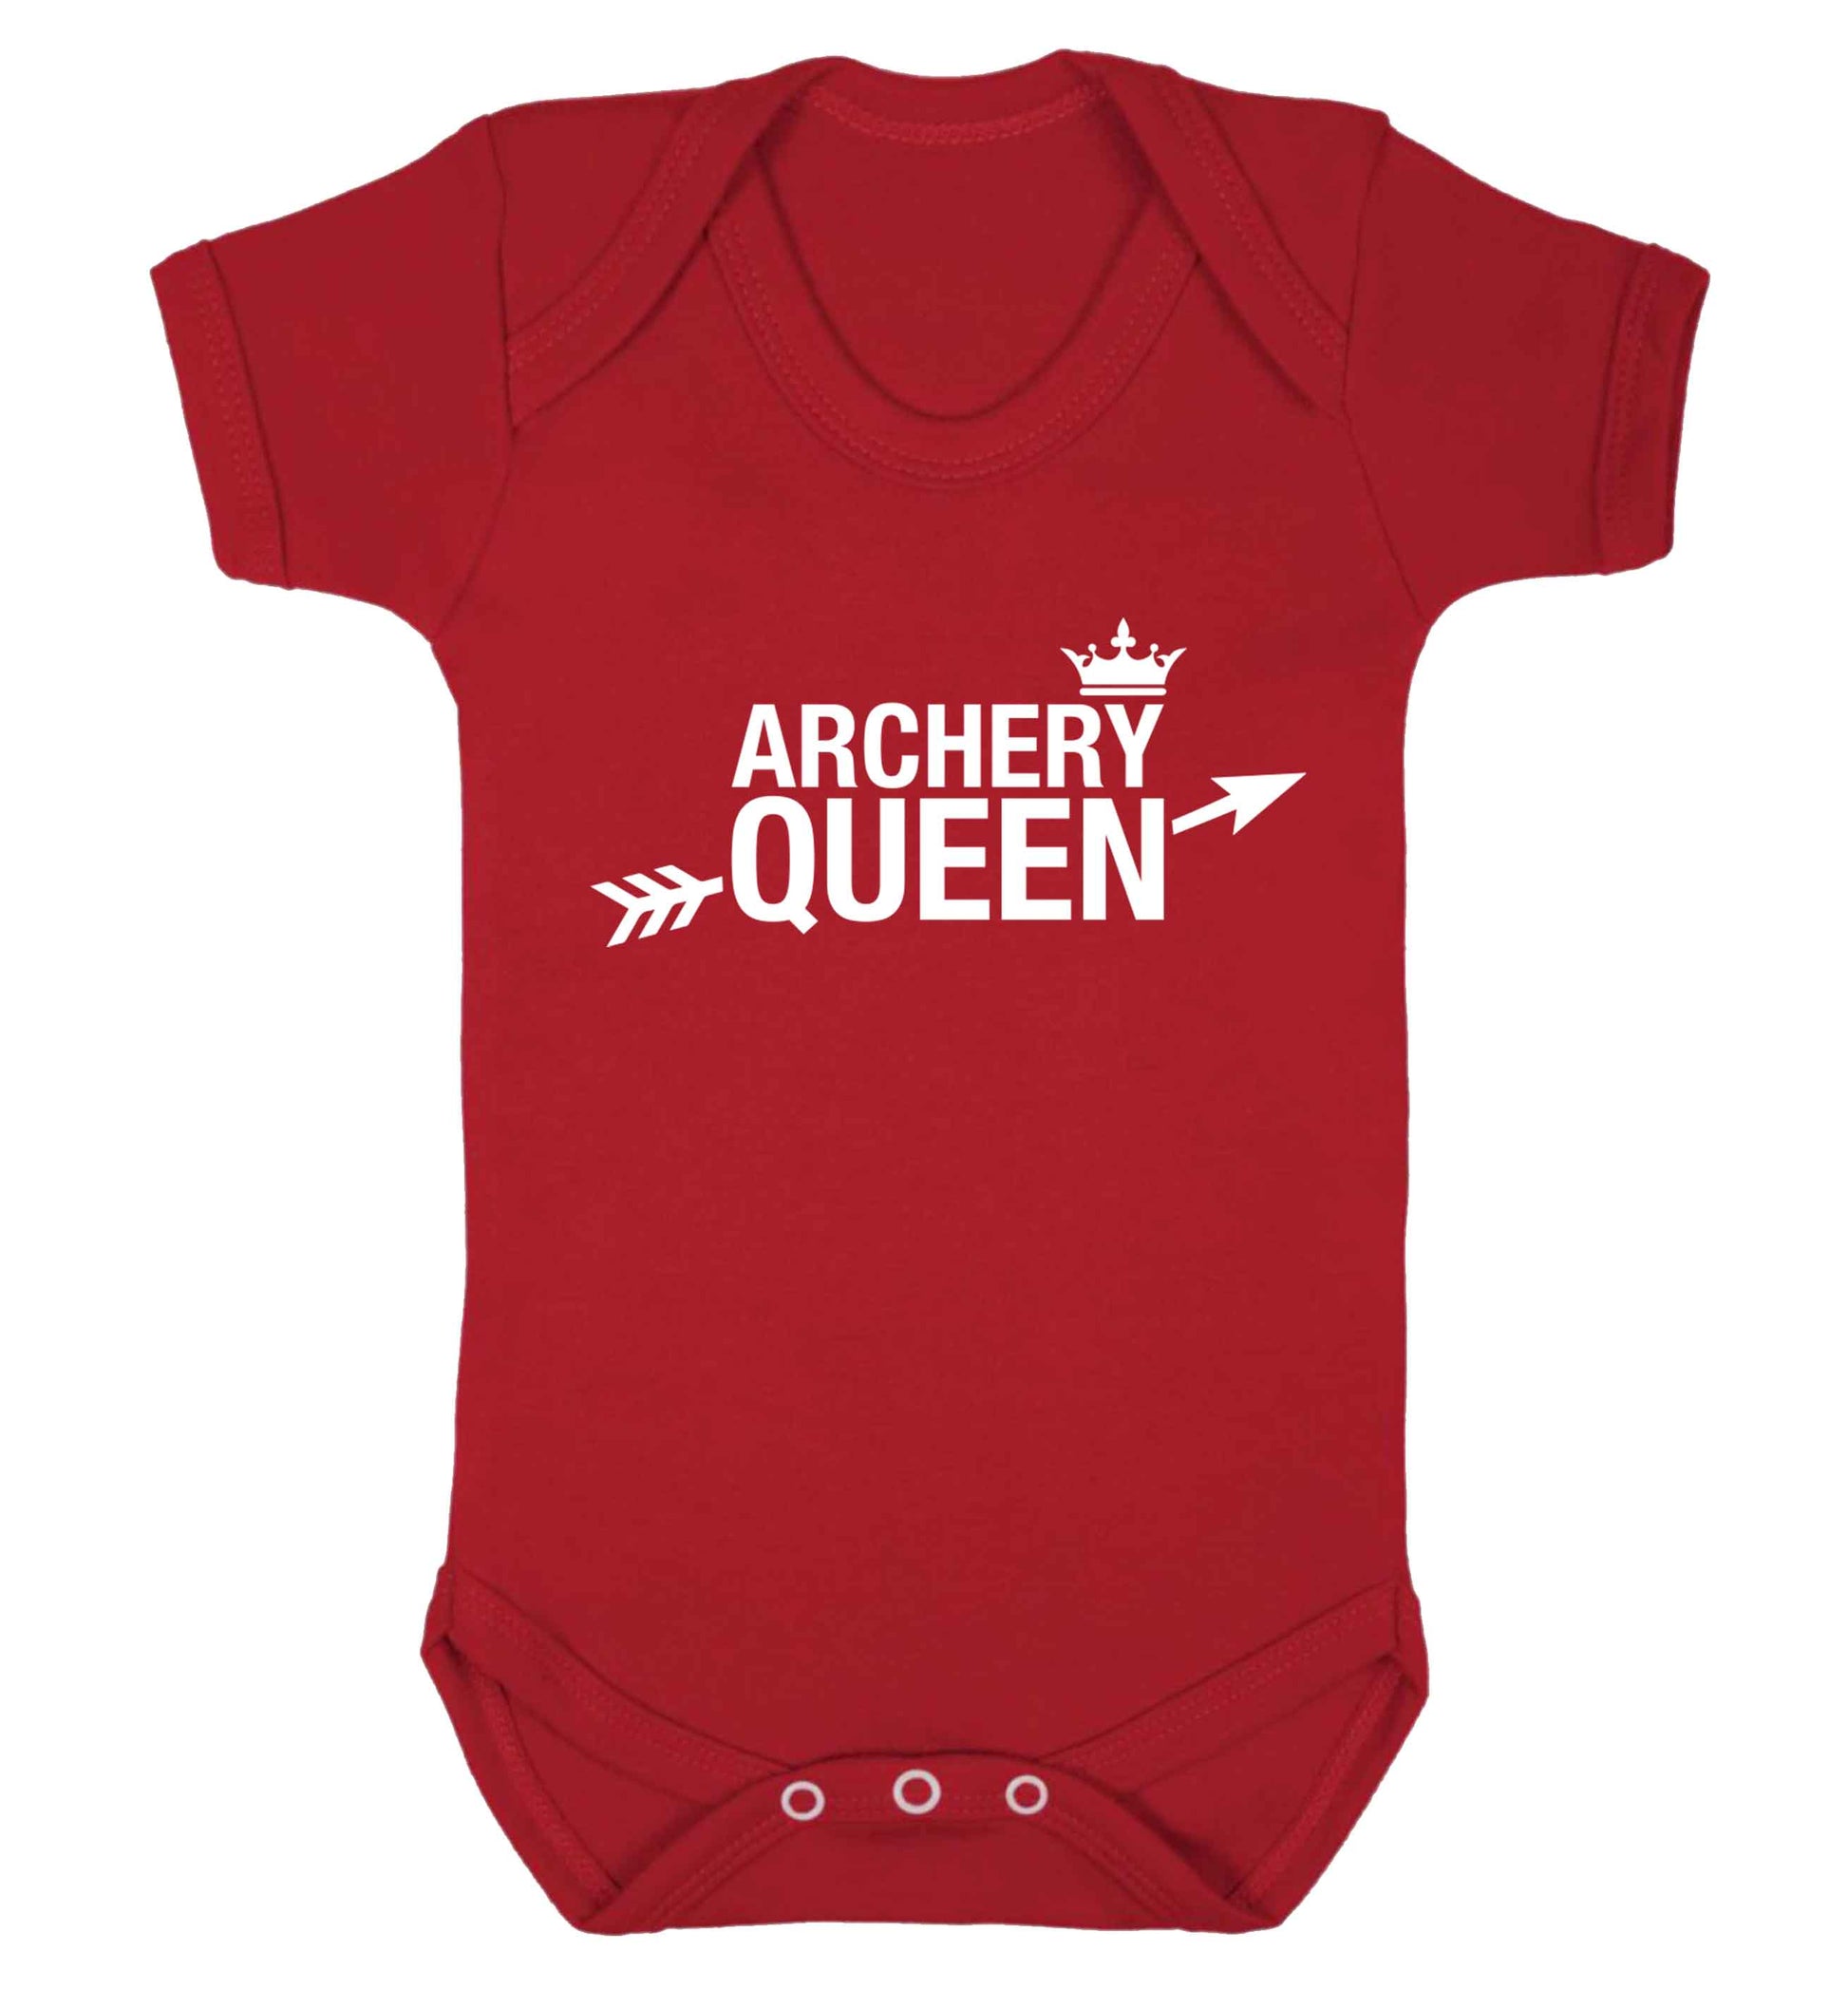 Archery queen Baby Vest red 18-24 months